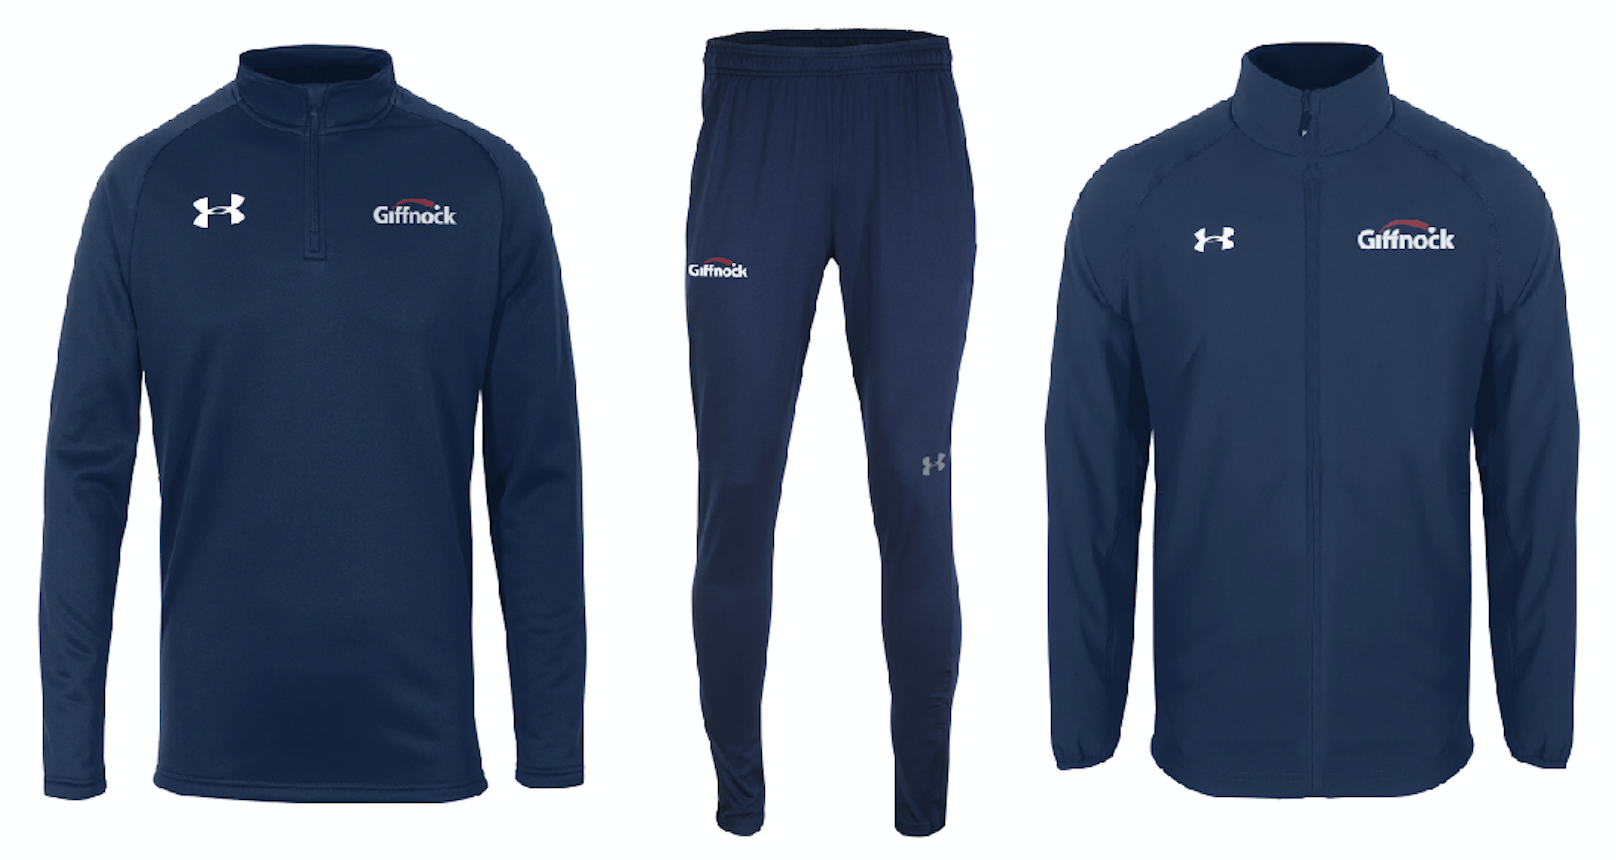 Samples of Giffnock Teamwear